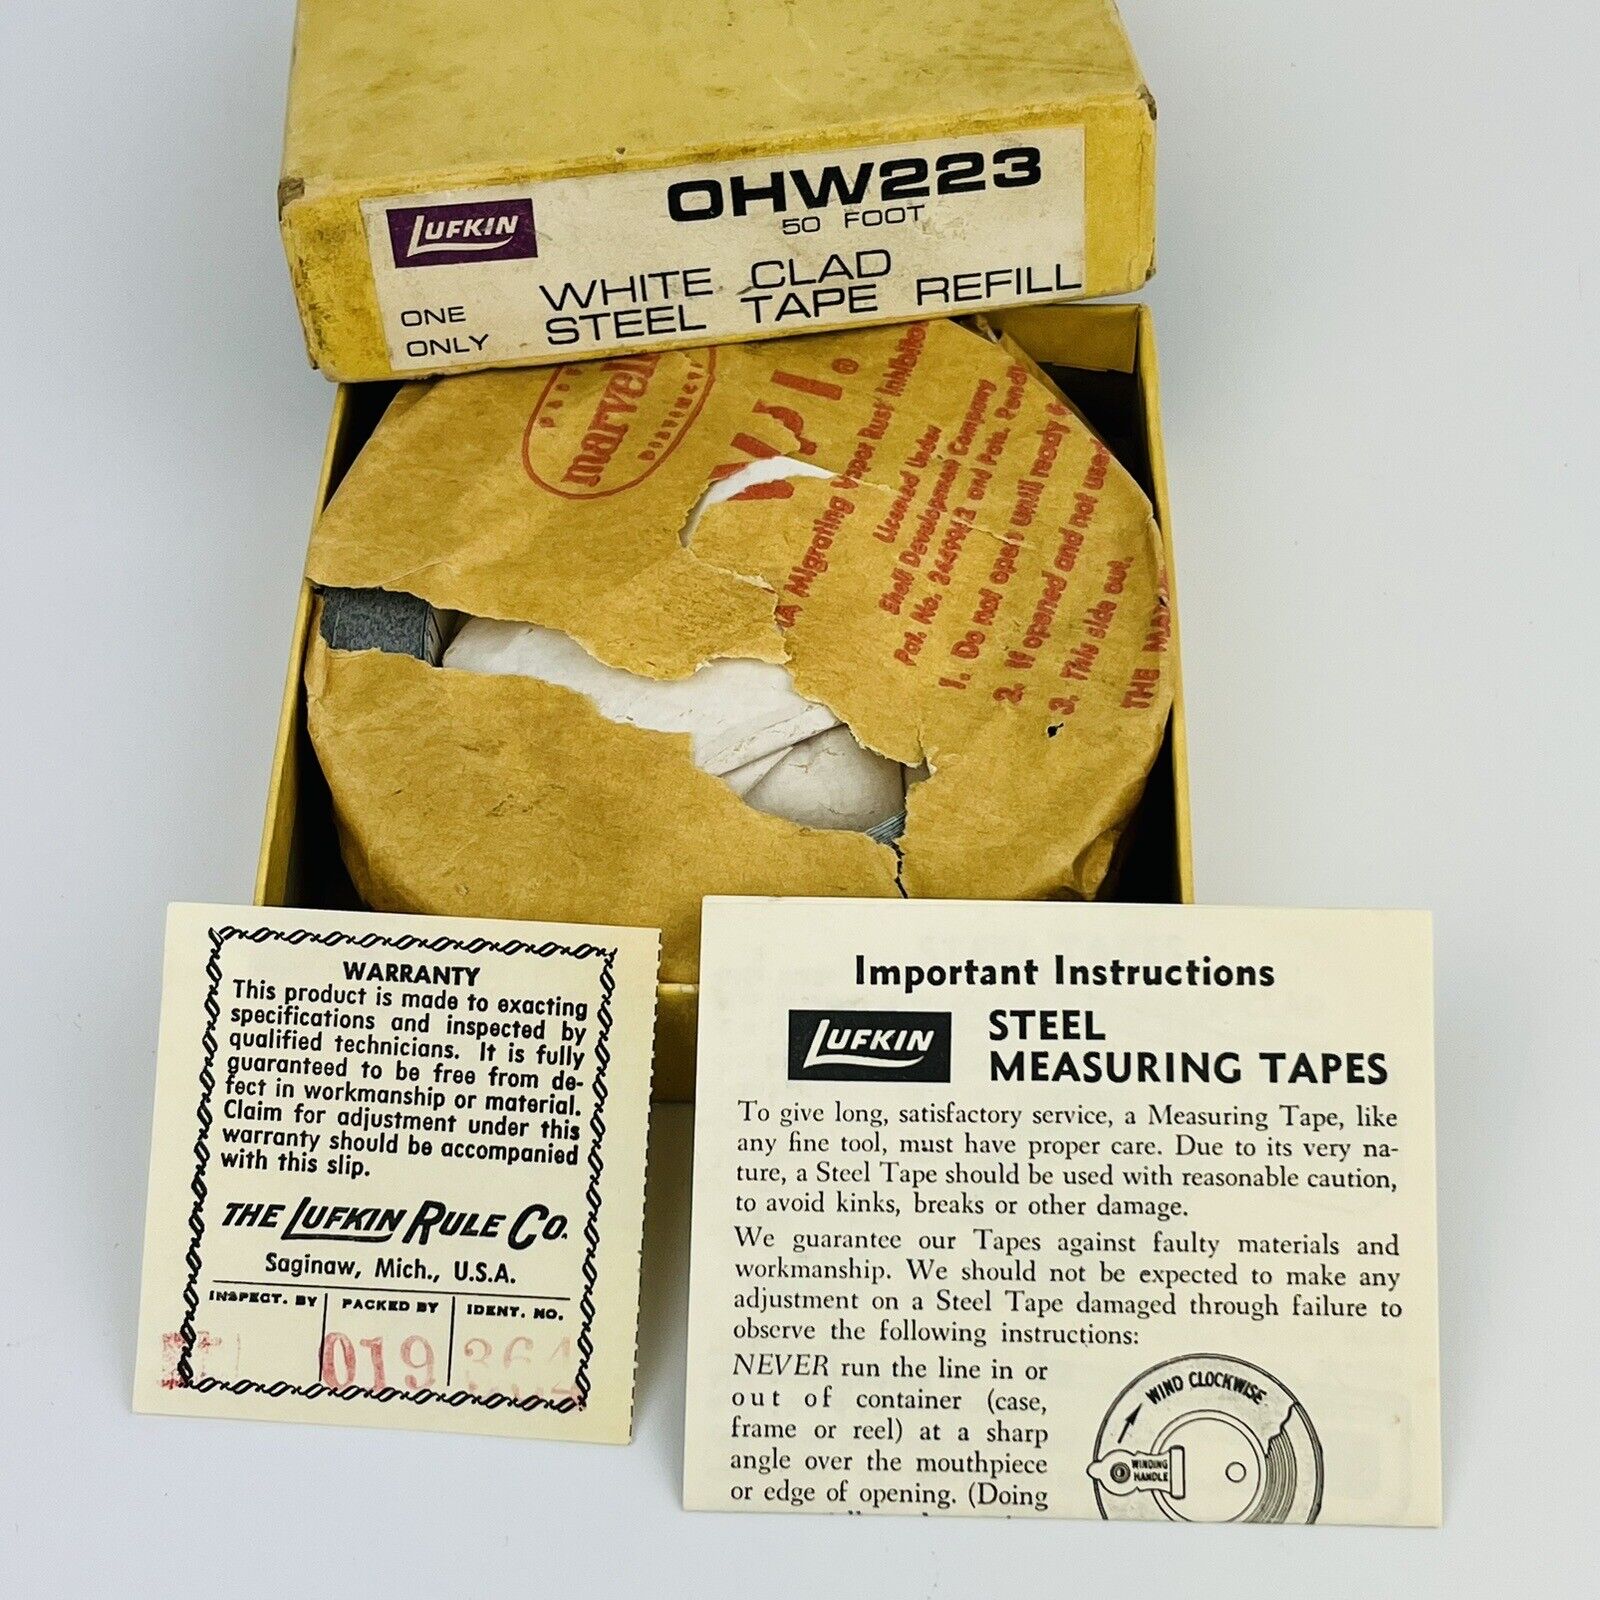 Vintage Lufkin OHW223 Steel 50’ Refill Measuring Tape w/o Case - NIB White Clad